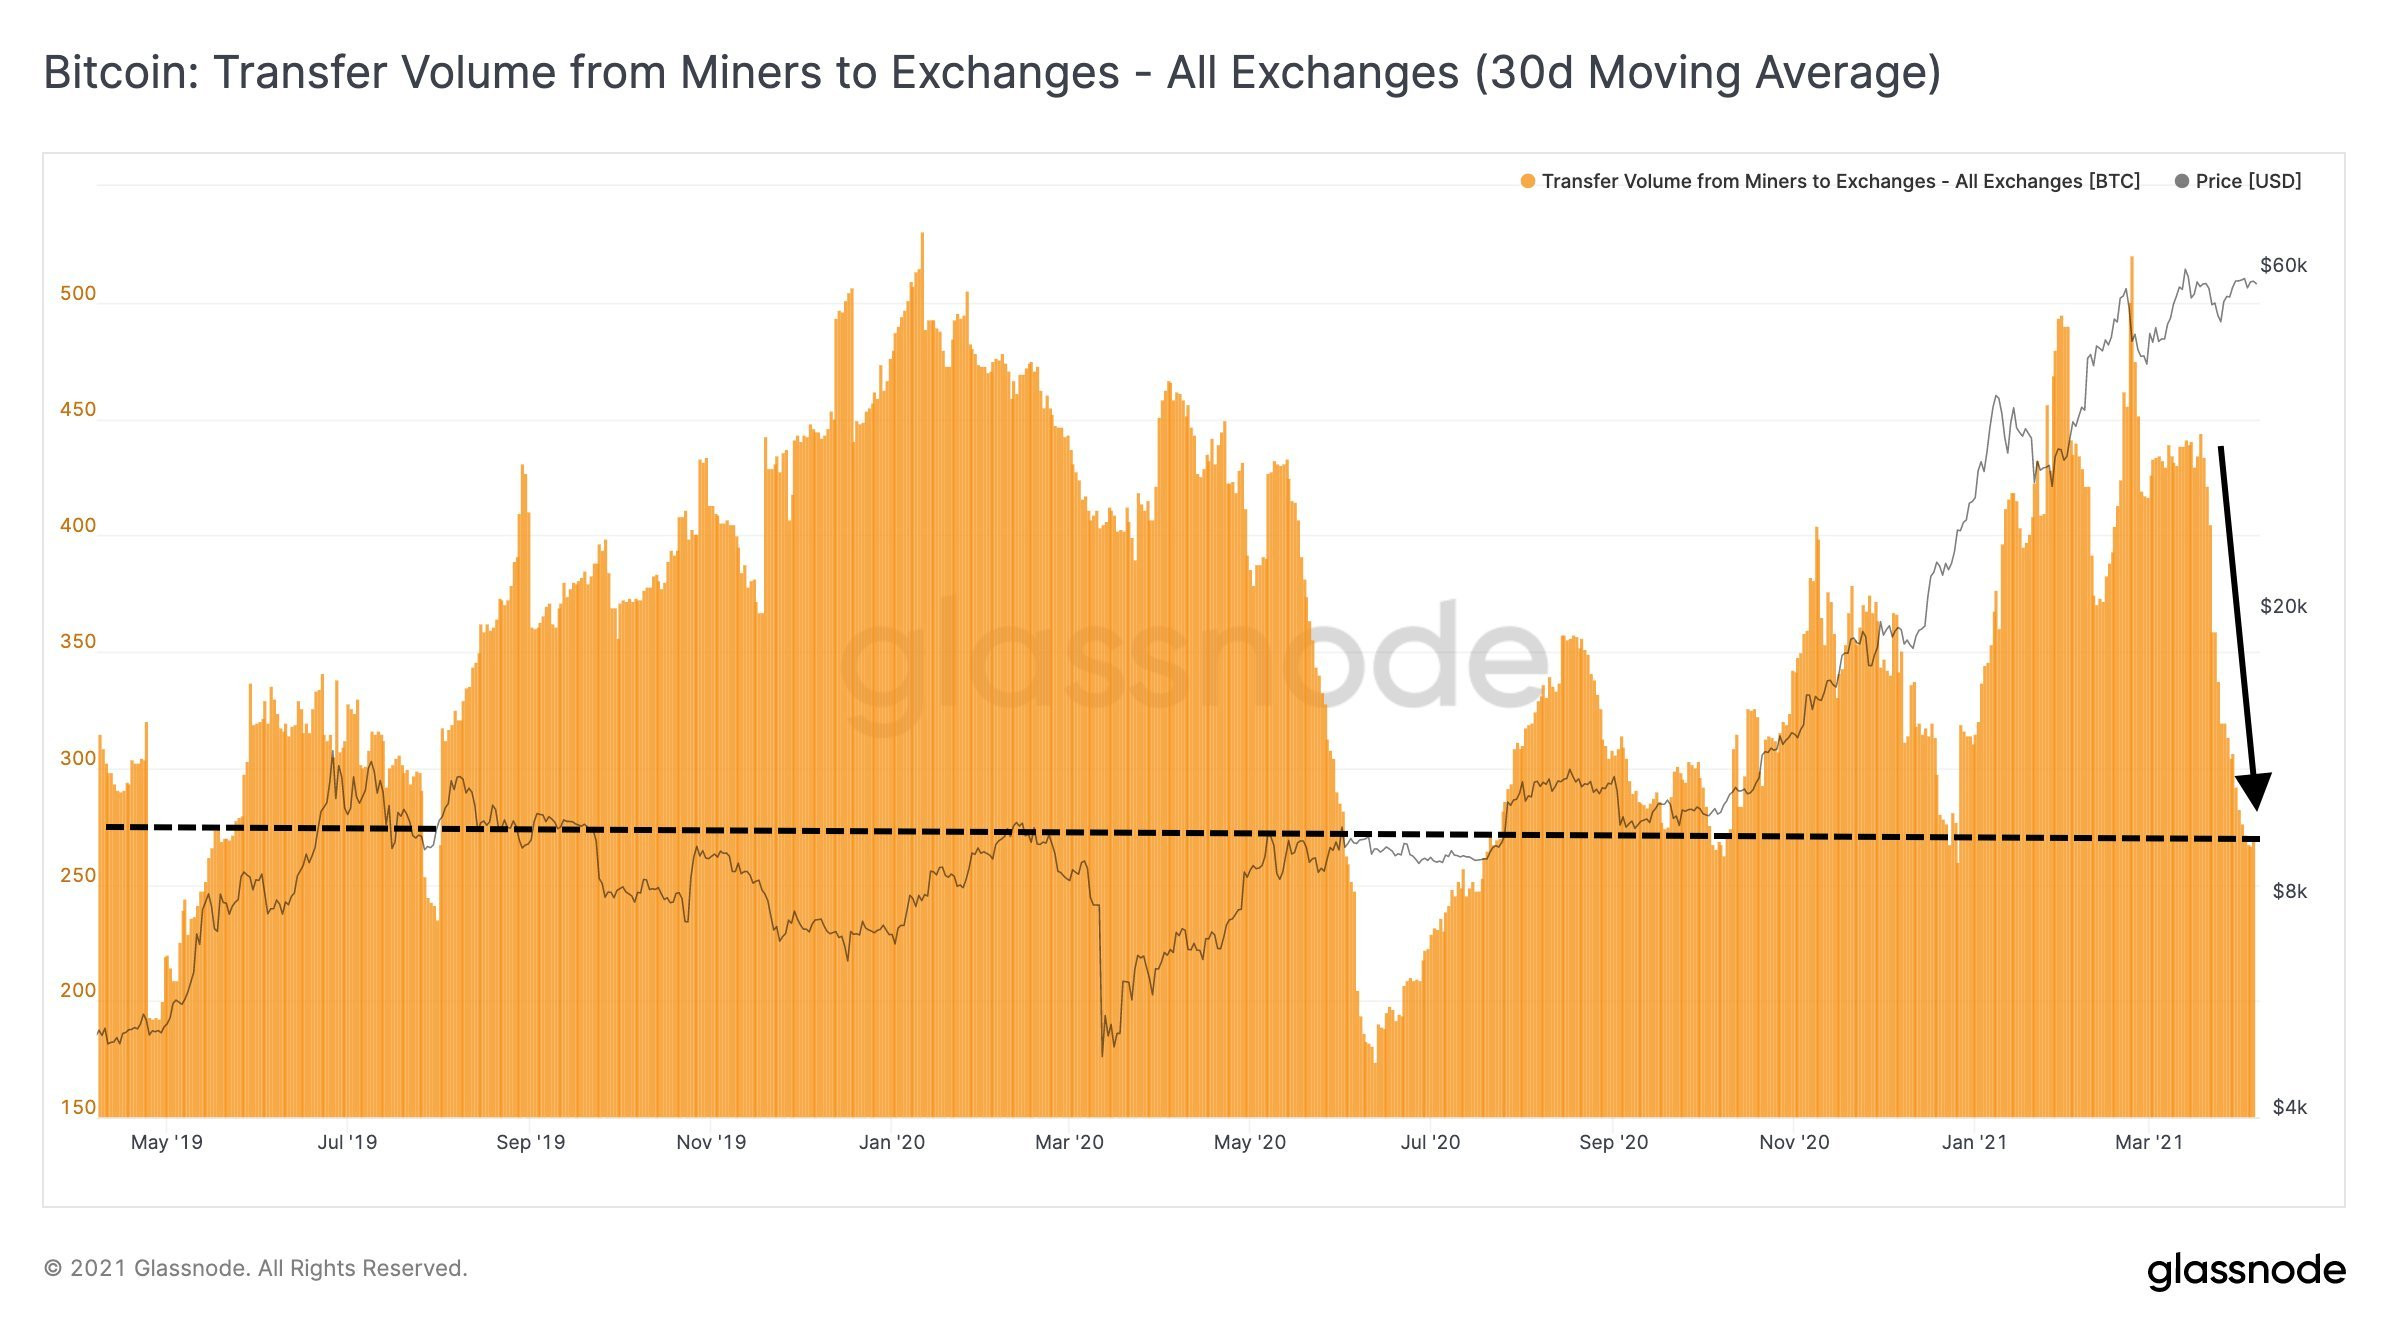 Volumen de transacción de los mineros a todos los exchanges (Glassnode)